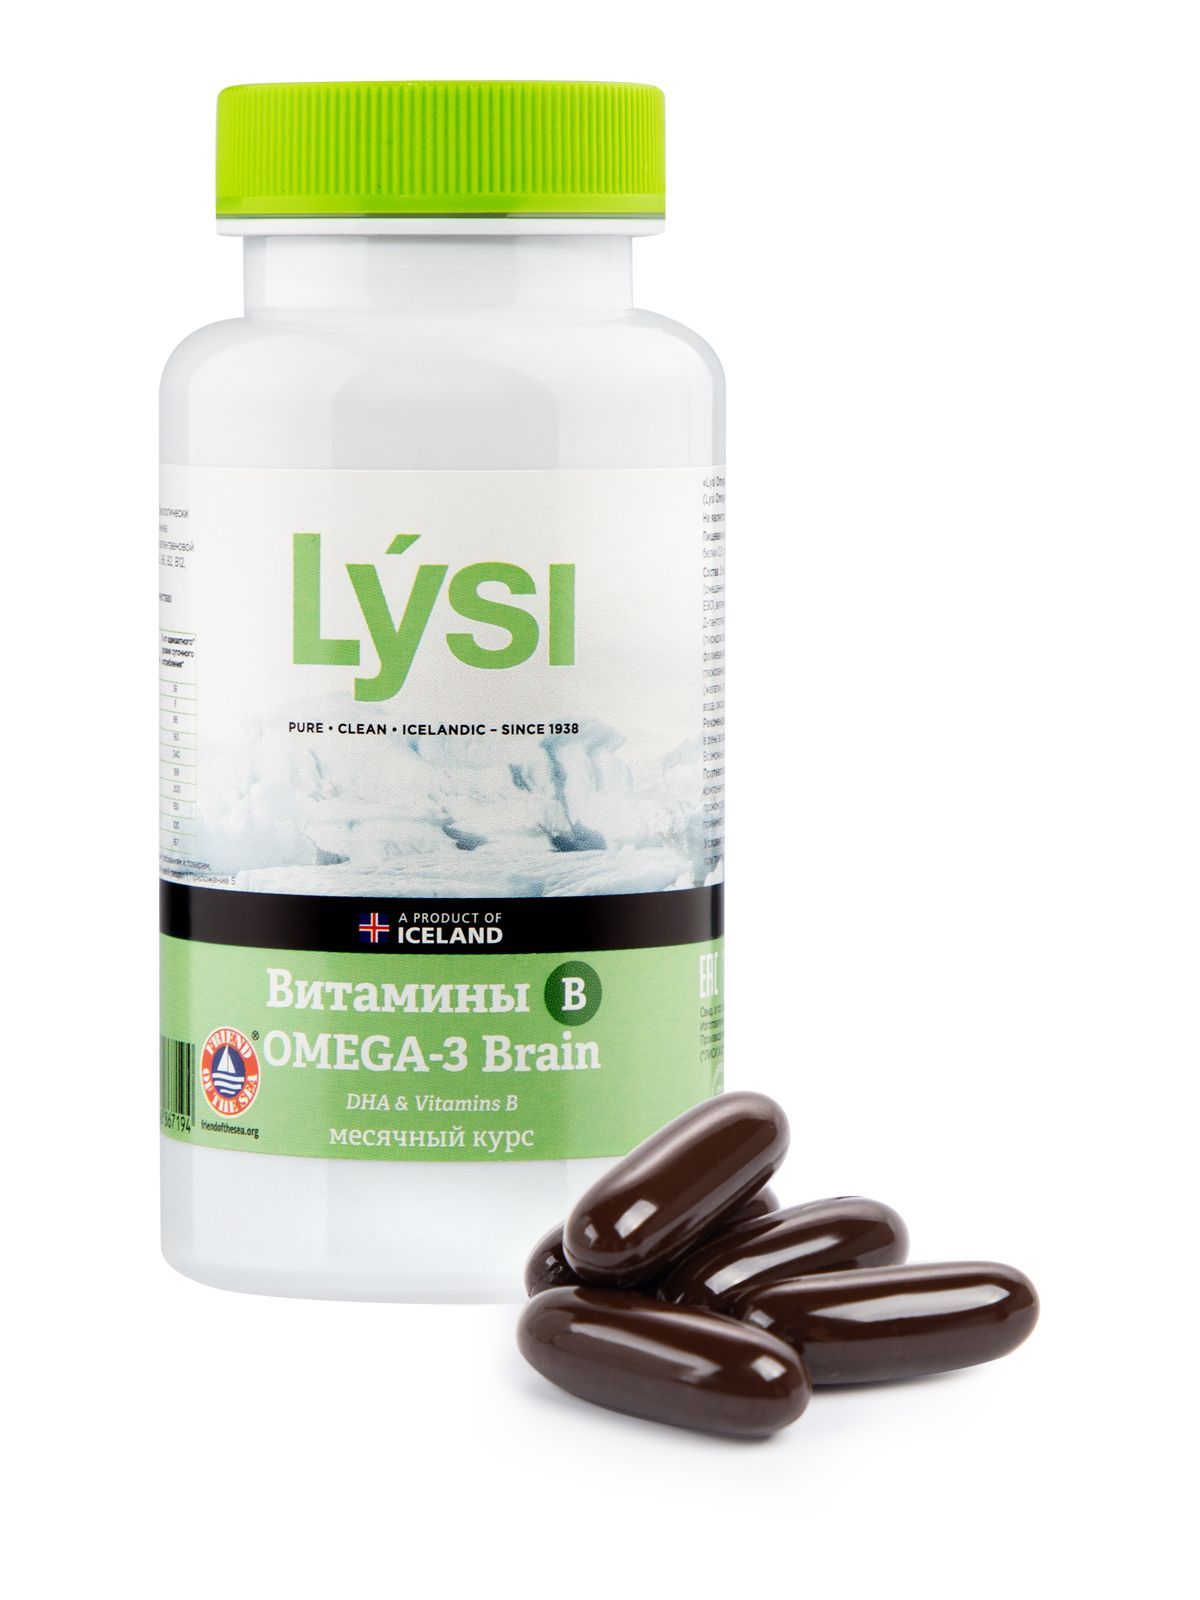 Lysi omega 3 капсулы отзывы. Омега 3 мультивитамины Lysi отзывы врачей.